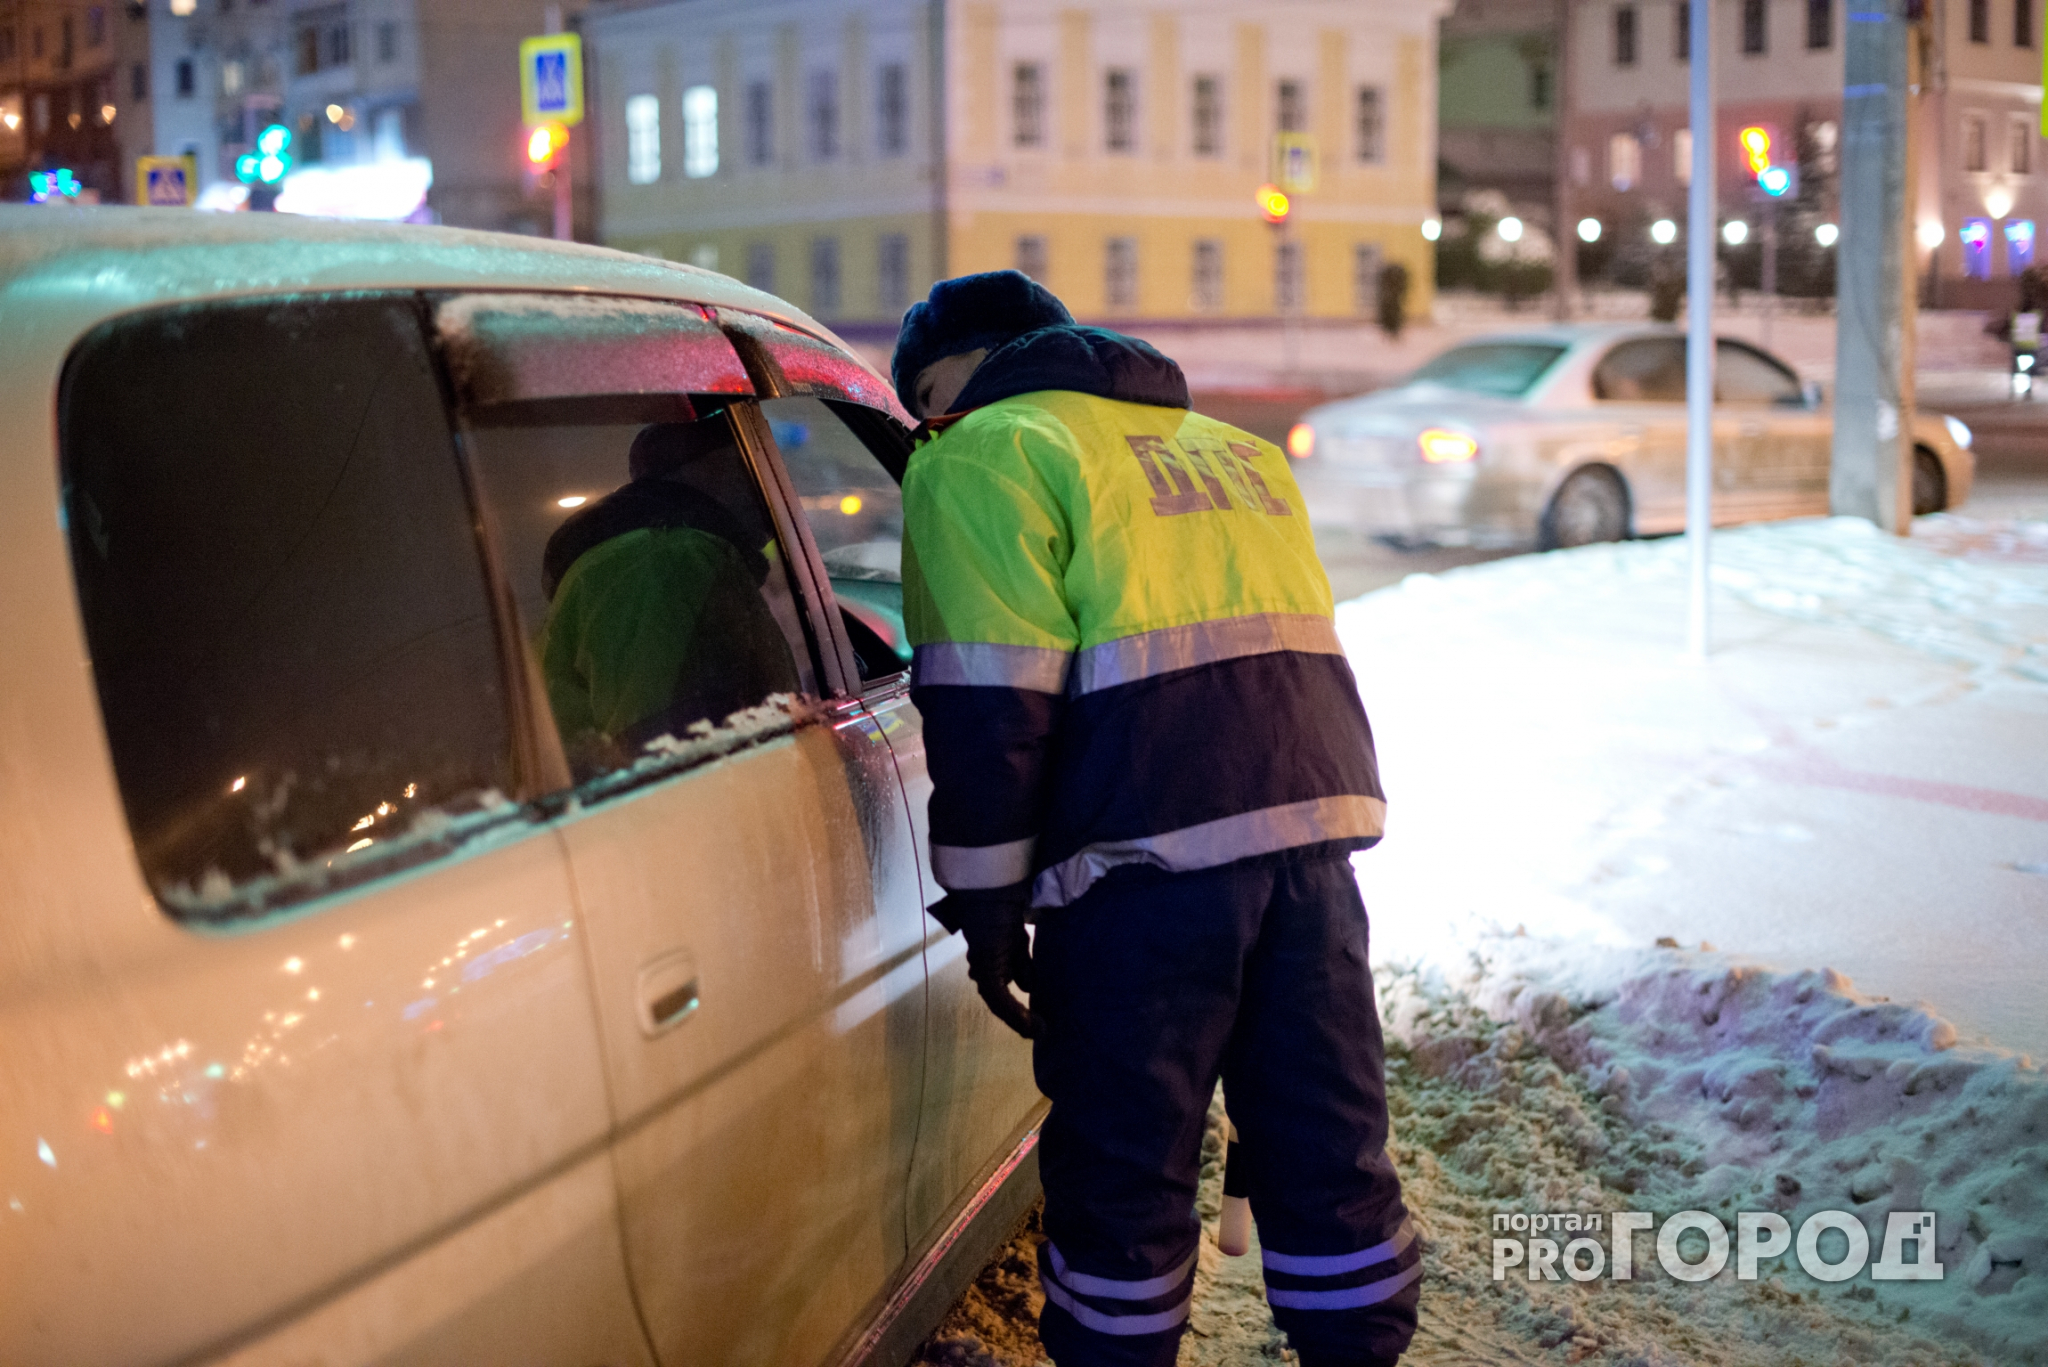 Автоинспекторы в Кирове в предновогодние дни усилят контроль за водителями